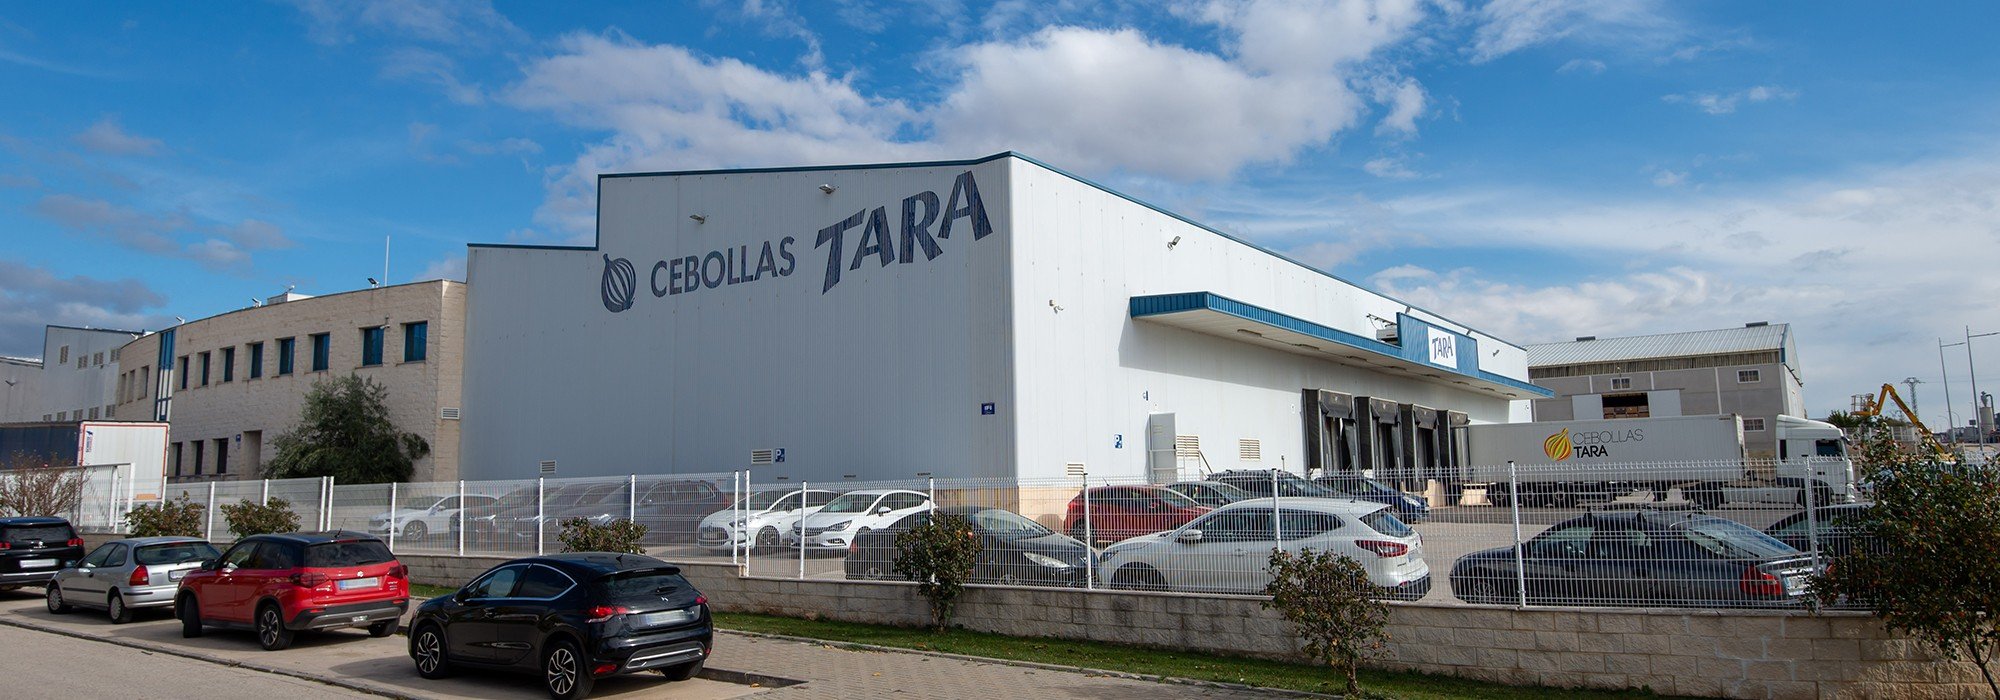 Unsere Einrichtungen :: Cebollas Tara :: Spezialisiert auf Knoblauch und Zwiebeln.